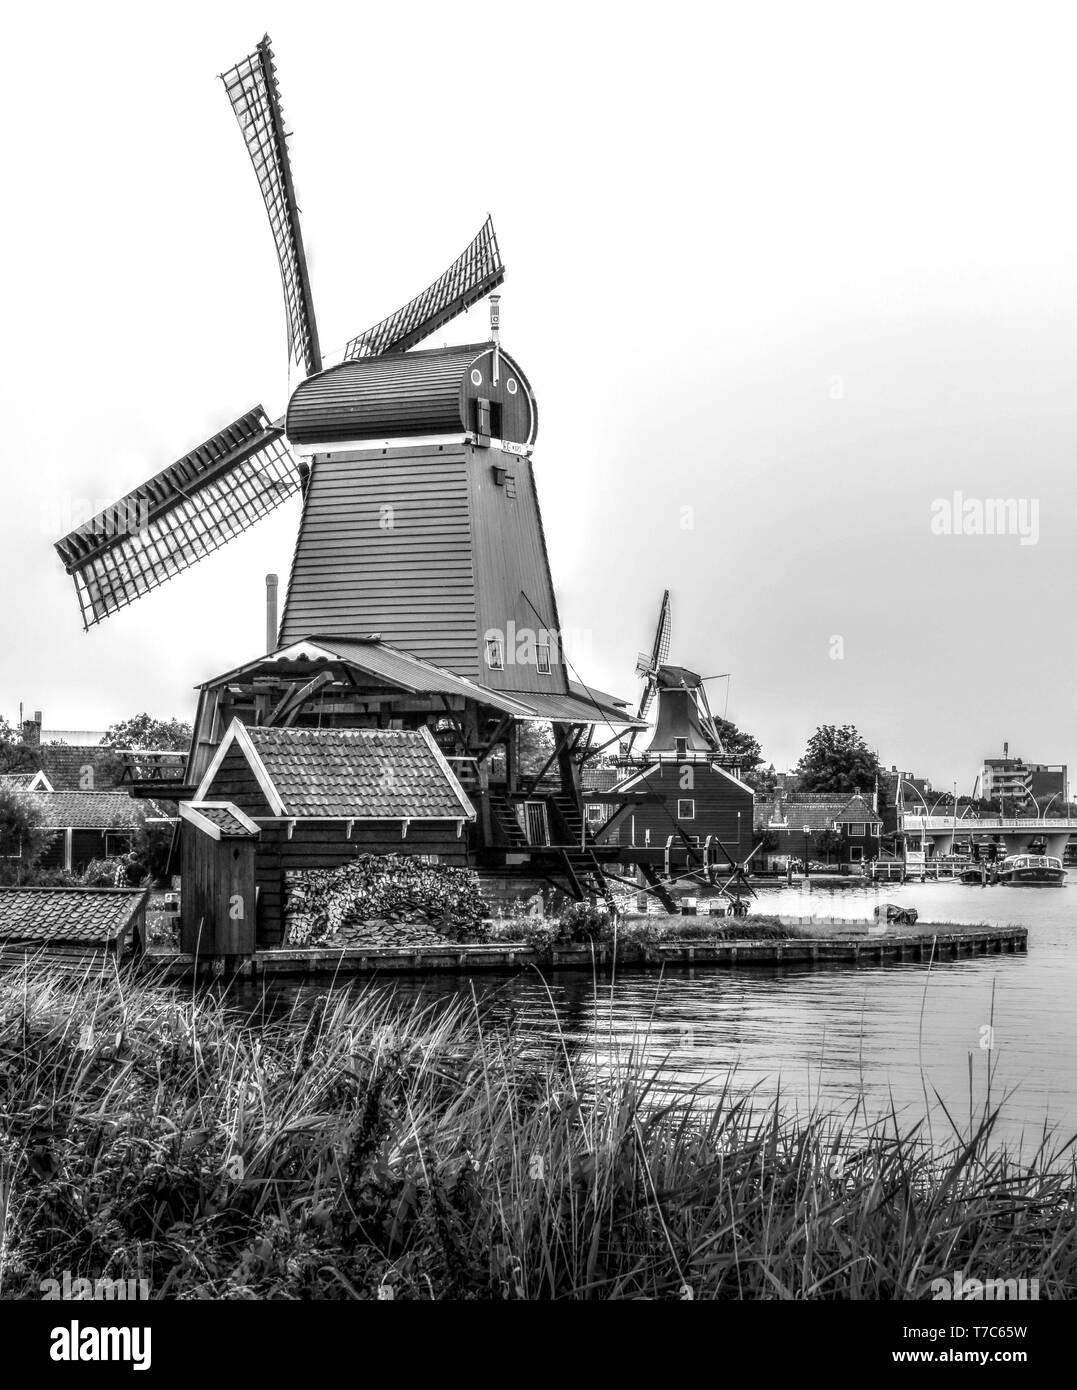 Authentische niederländische Landschaft an einem schönen Tag Stockfoto